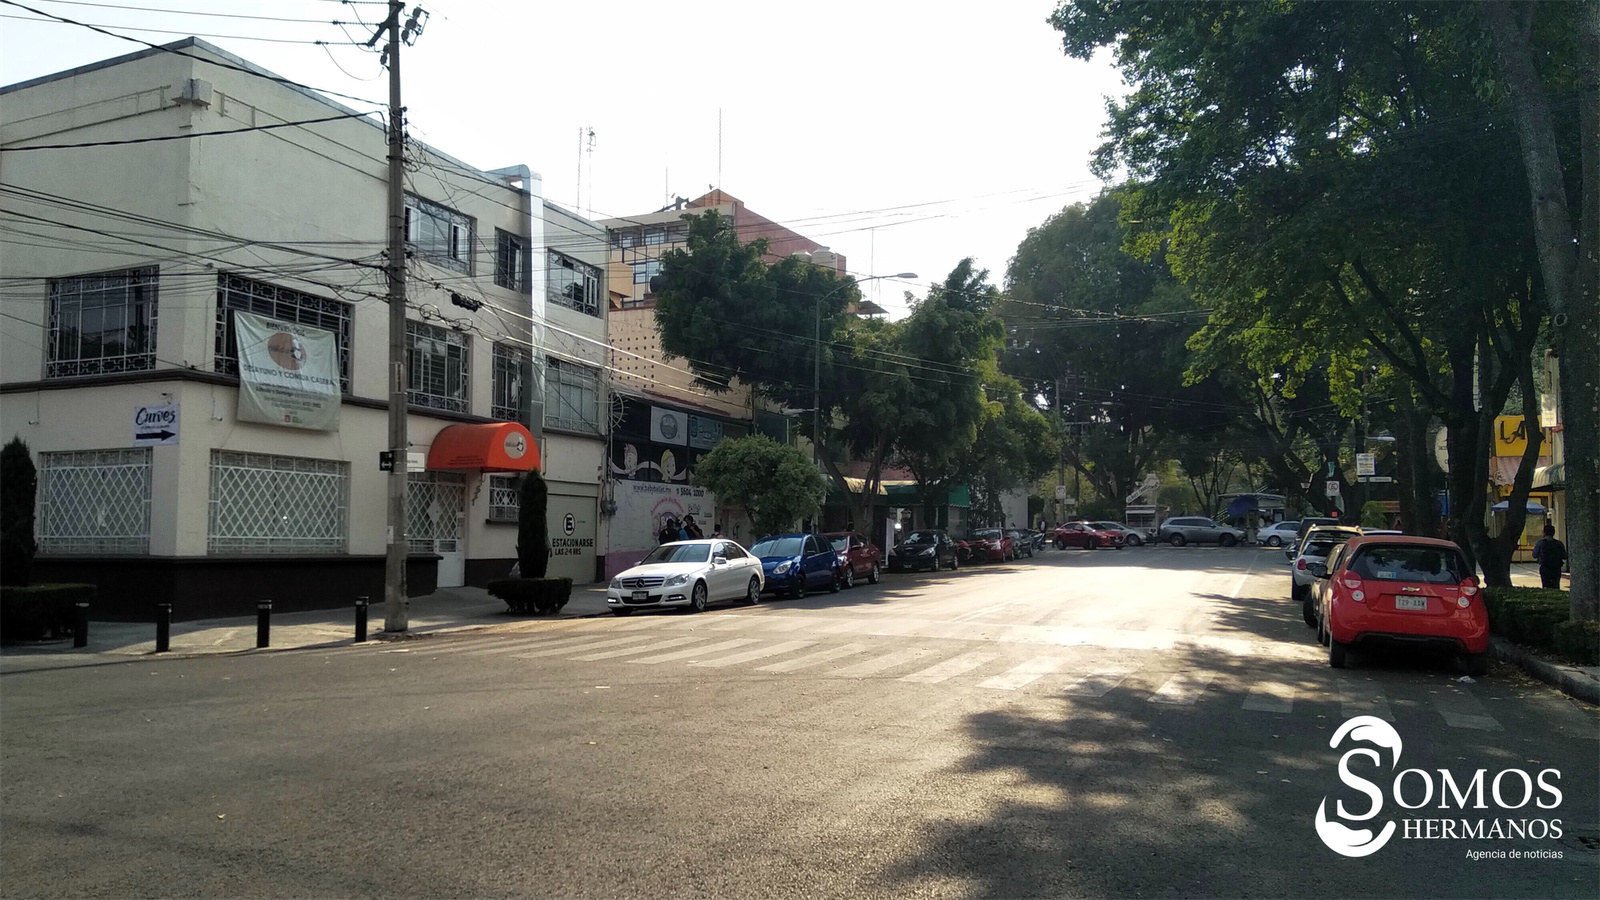 Las calles de la CDMX con legado altruista